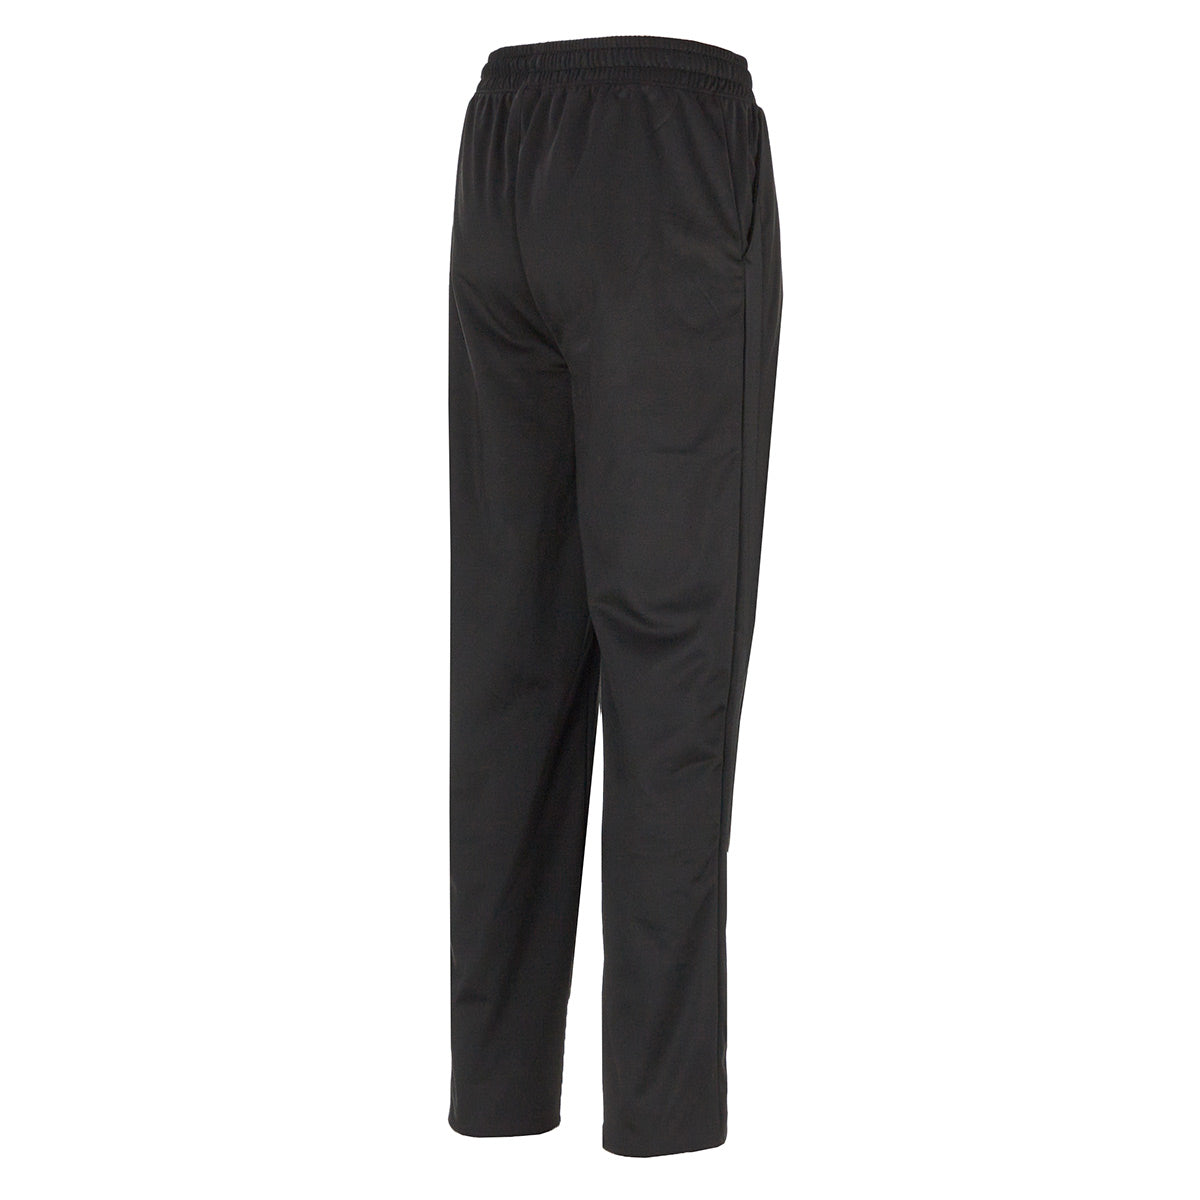 TEK Gear Training Piped Tricot Pants Black Ash Men's Sz XXL for sale online